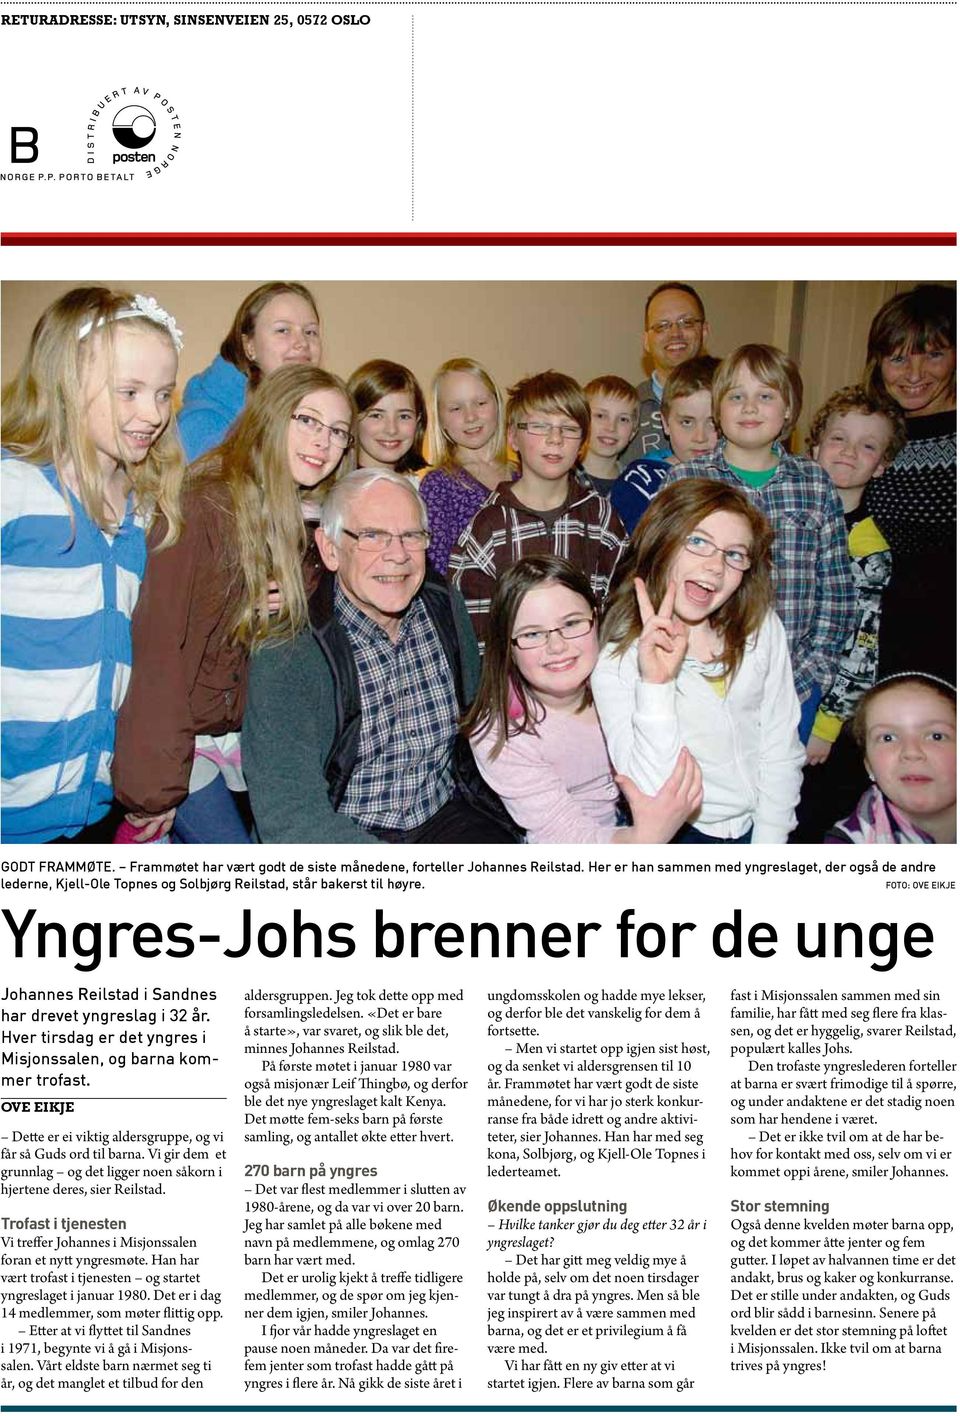 Foto: Ove Eikje Yngres-Johs brenner for de unge Johannes Reilstad i Sandnes har drevet yngreslag i 32 år. Hver tirsdag er det yngres i Misjonssalen, og barna kommer trofast.